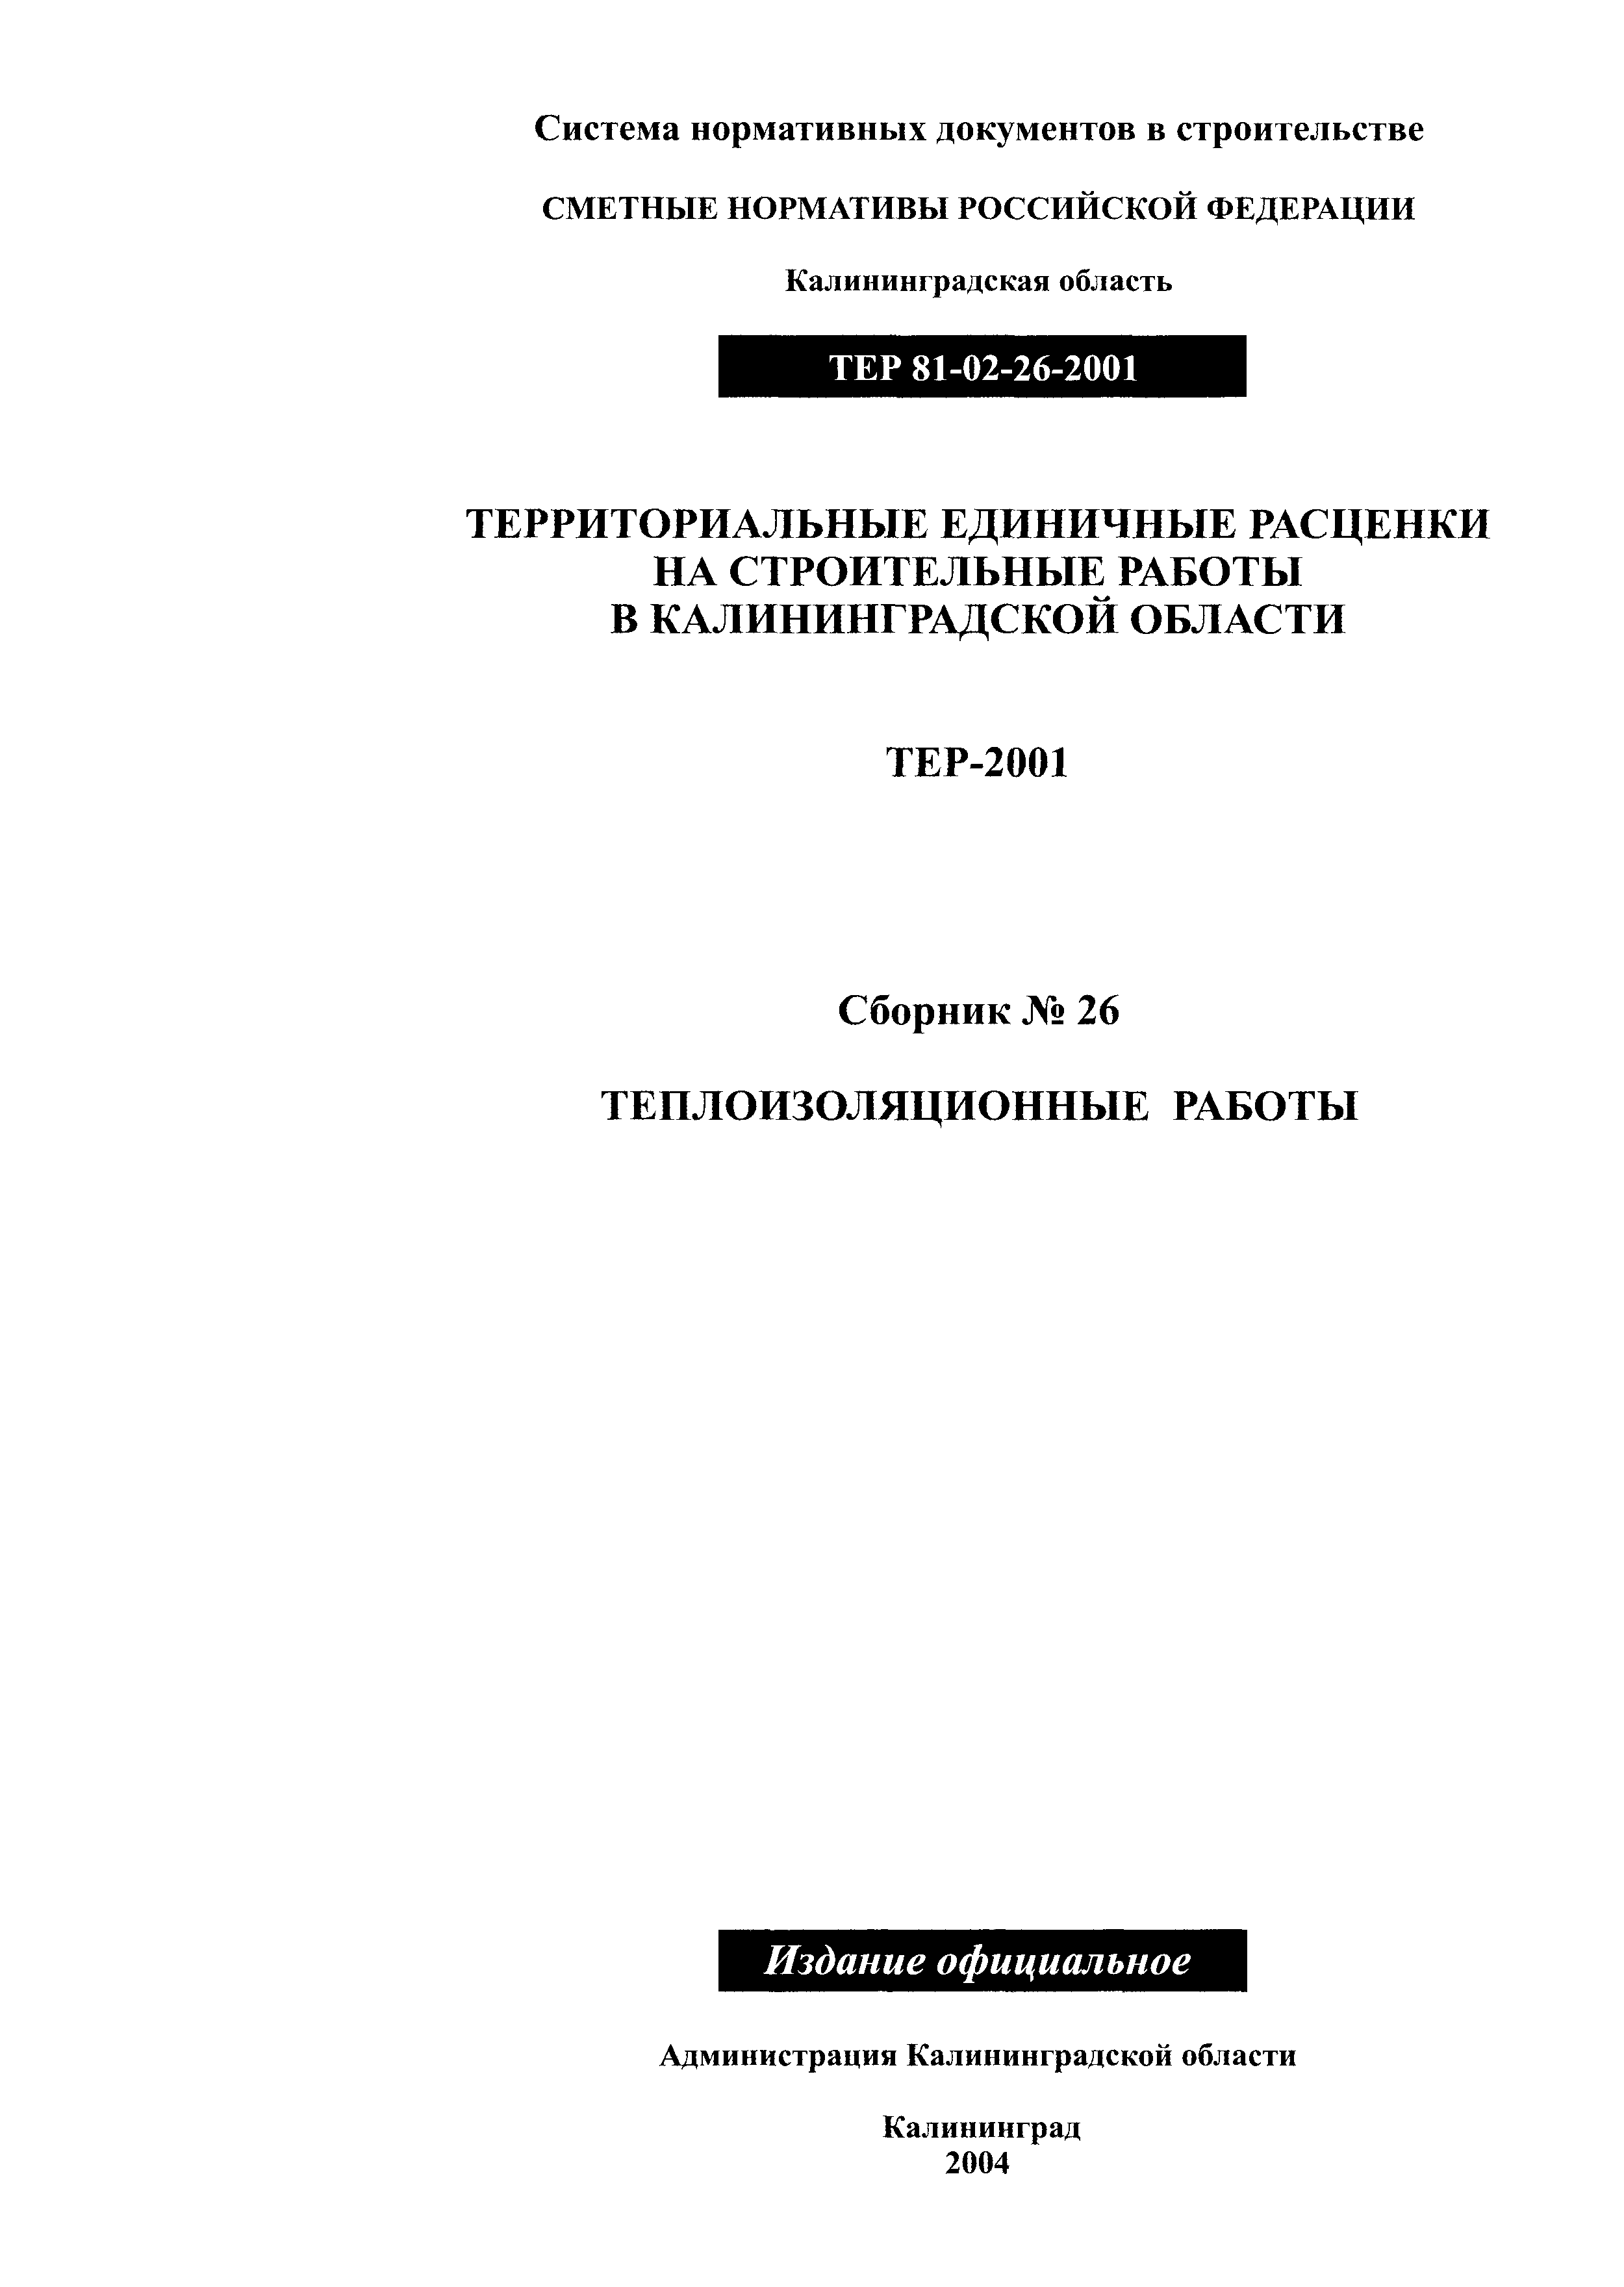 ТЕР Калининградская область 2001-26